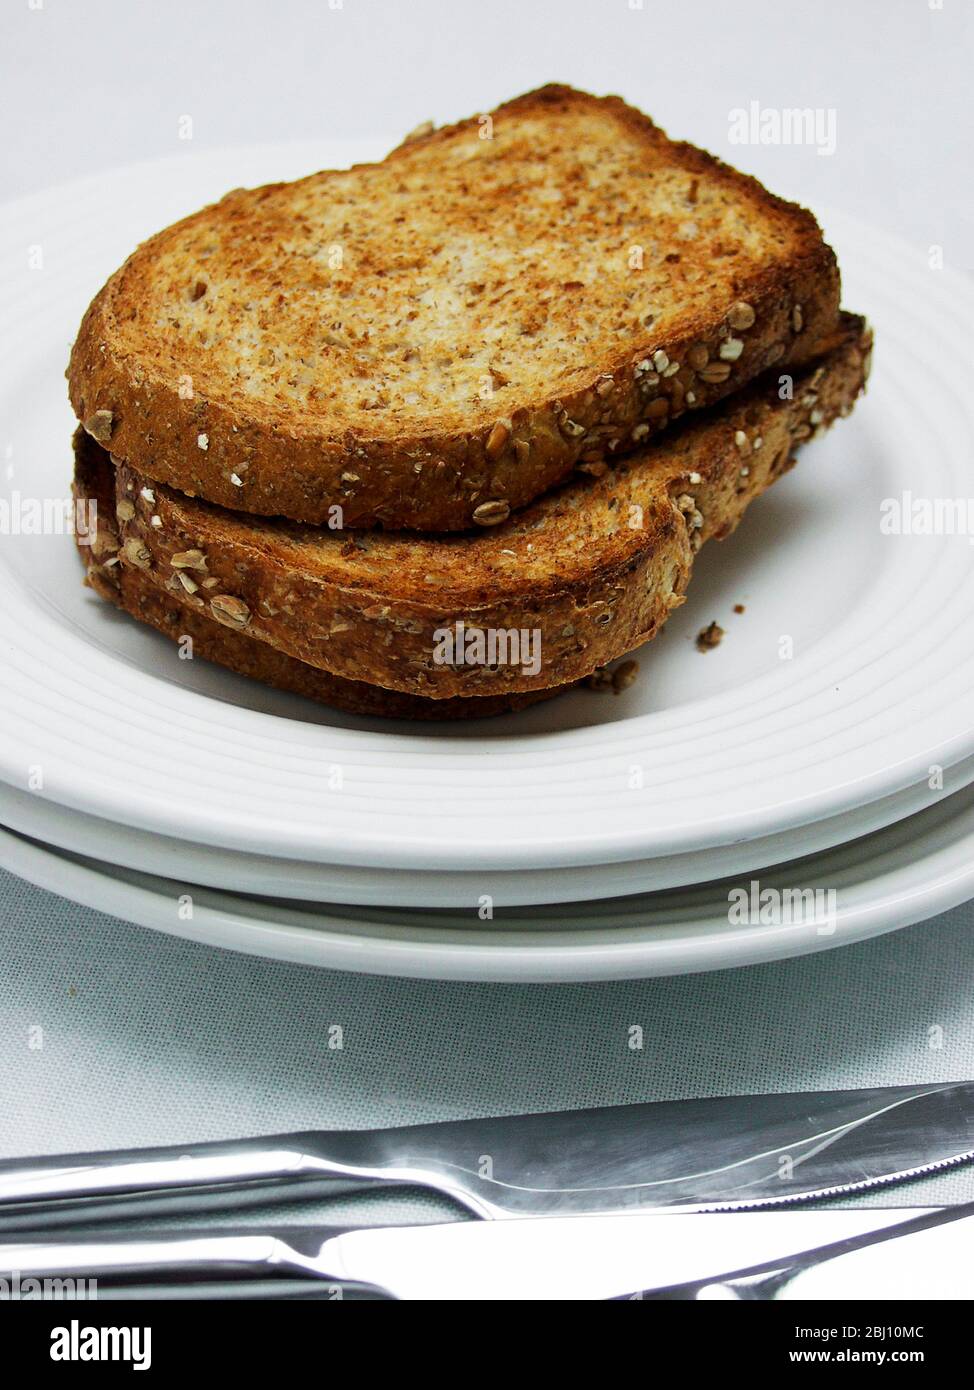 Trois tranches de toast complet marron sur une pile de plaques blanches avec couverts - Banque D'Images